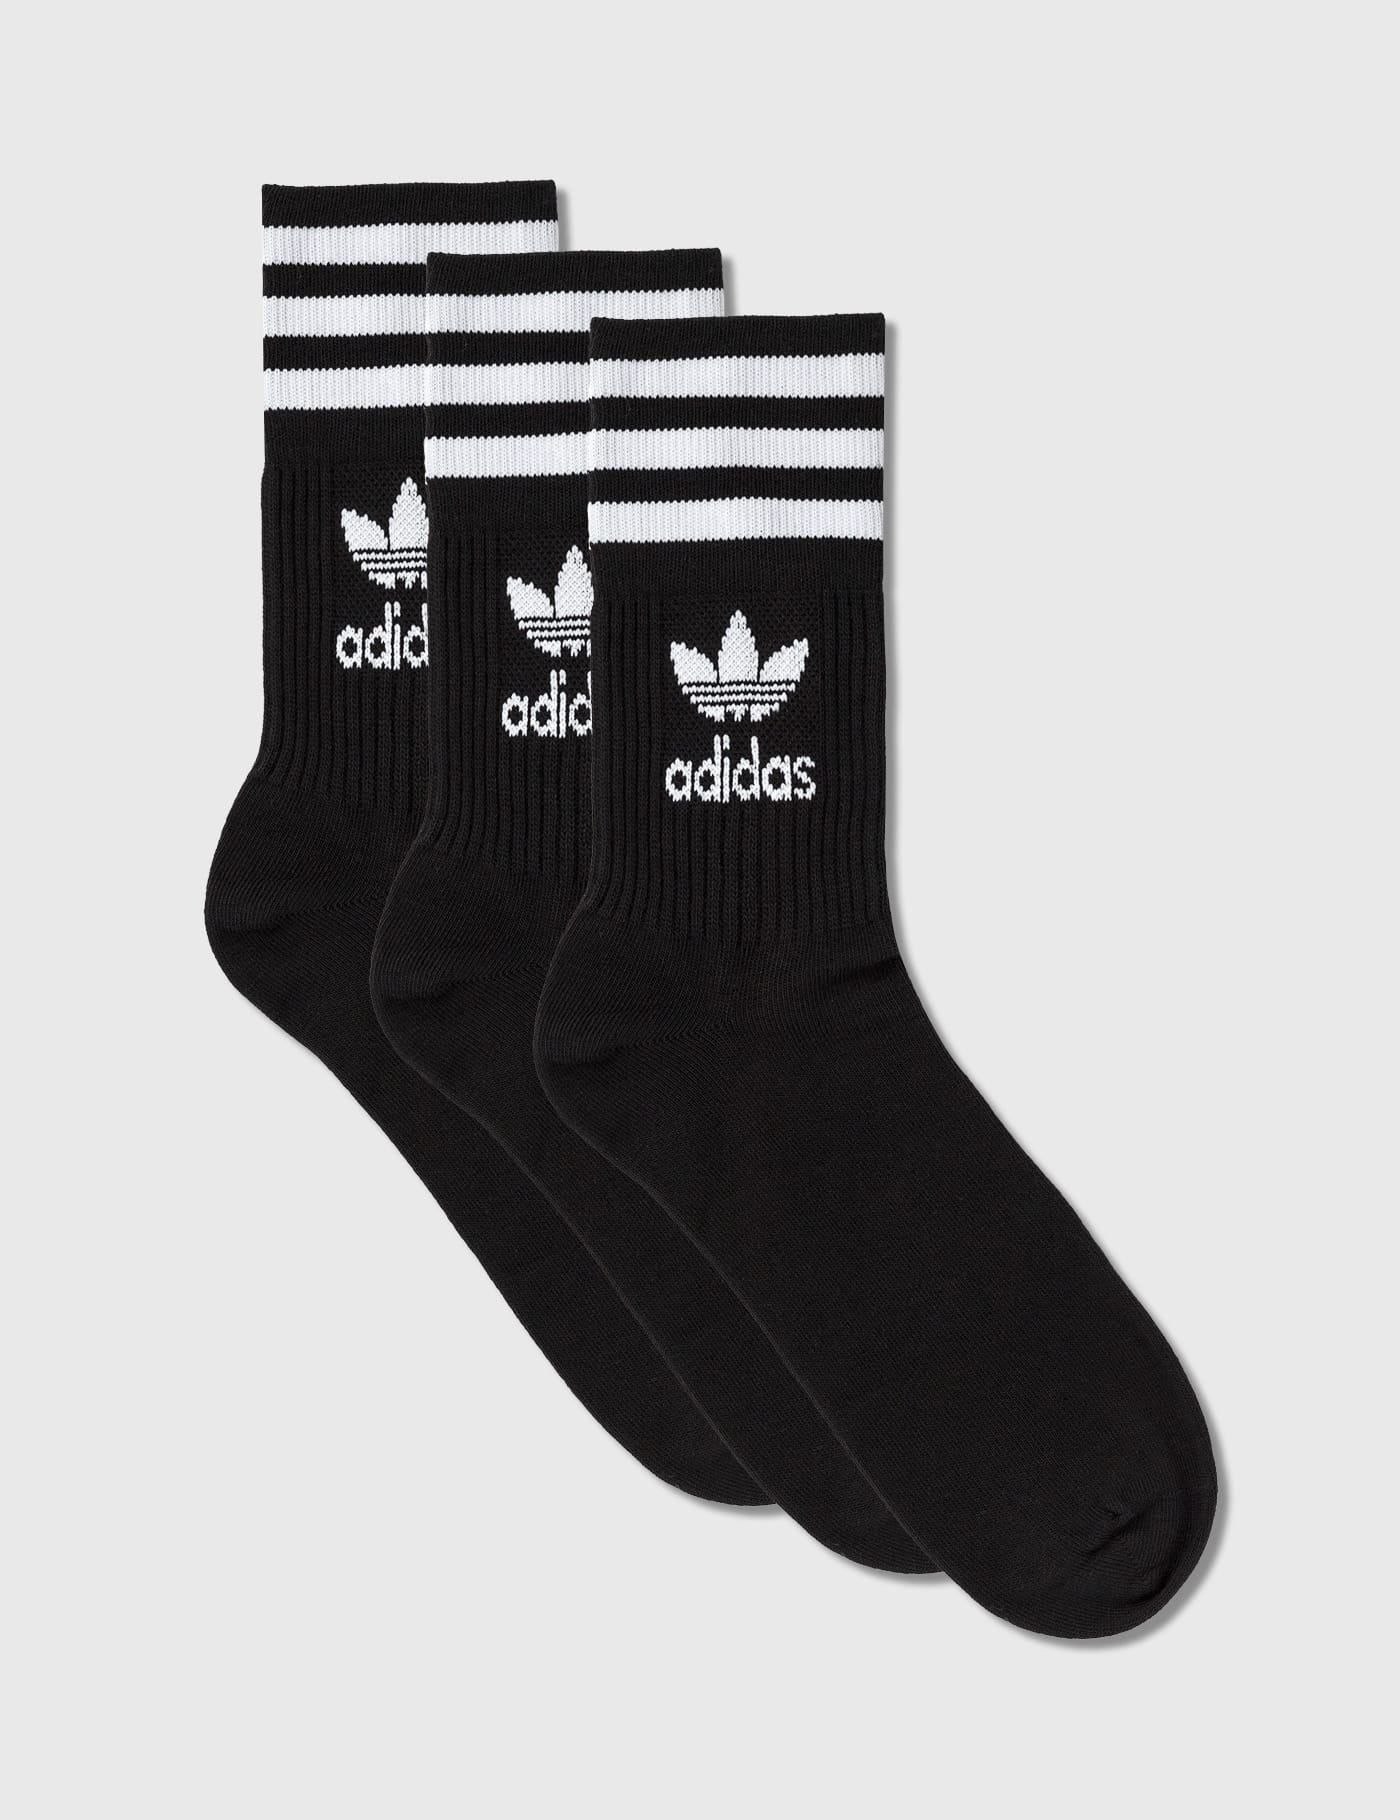 Adidas Originals - Mid Cut Crew Socks 3 